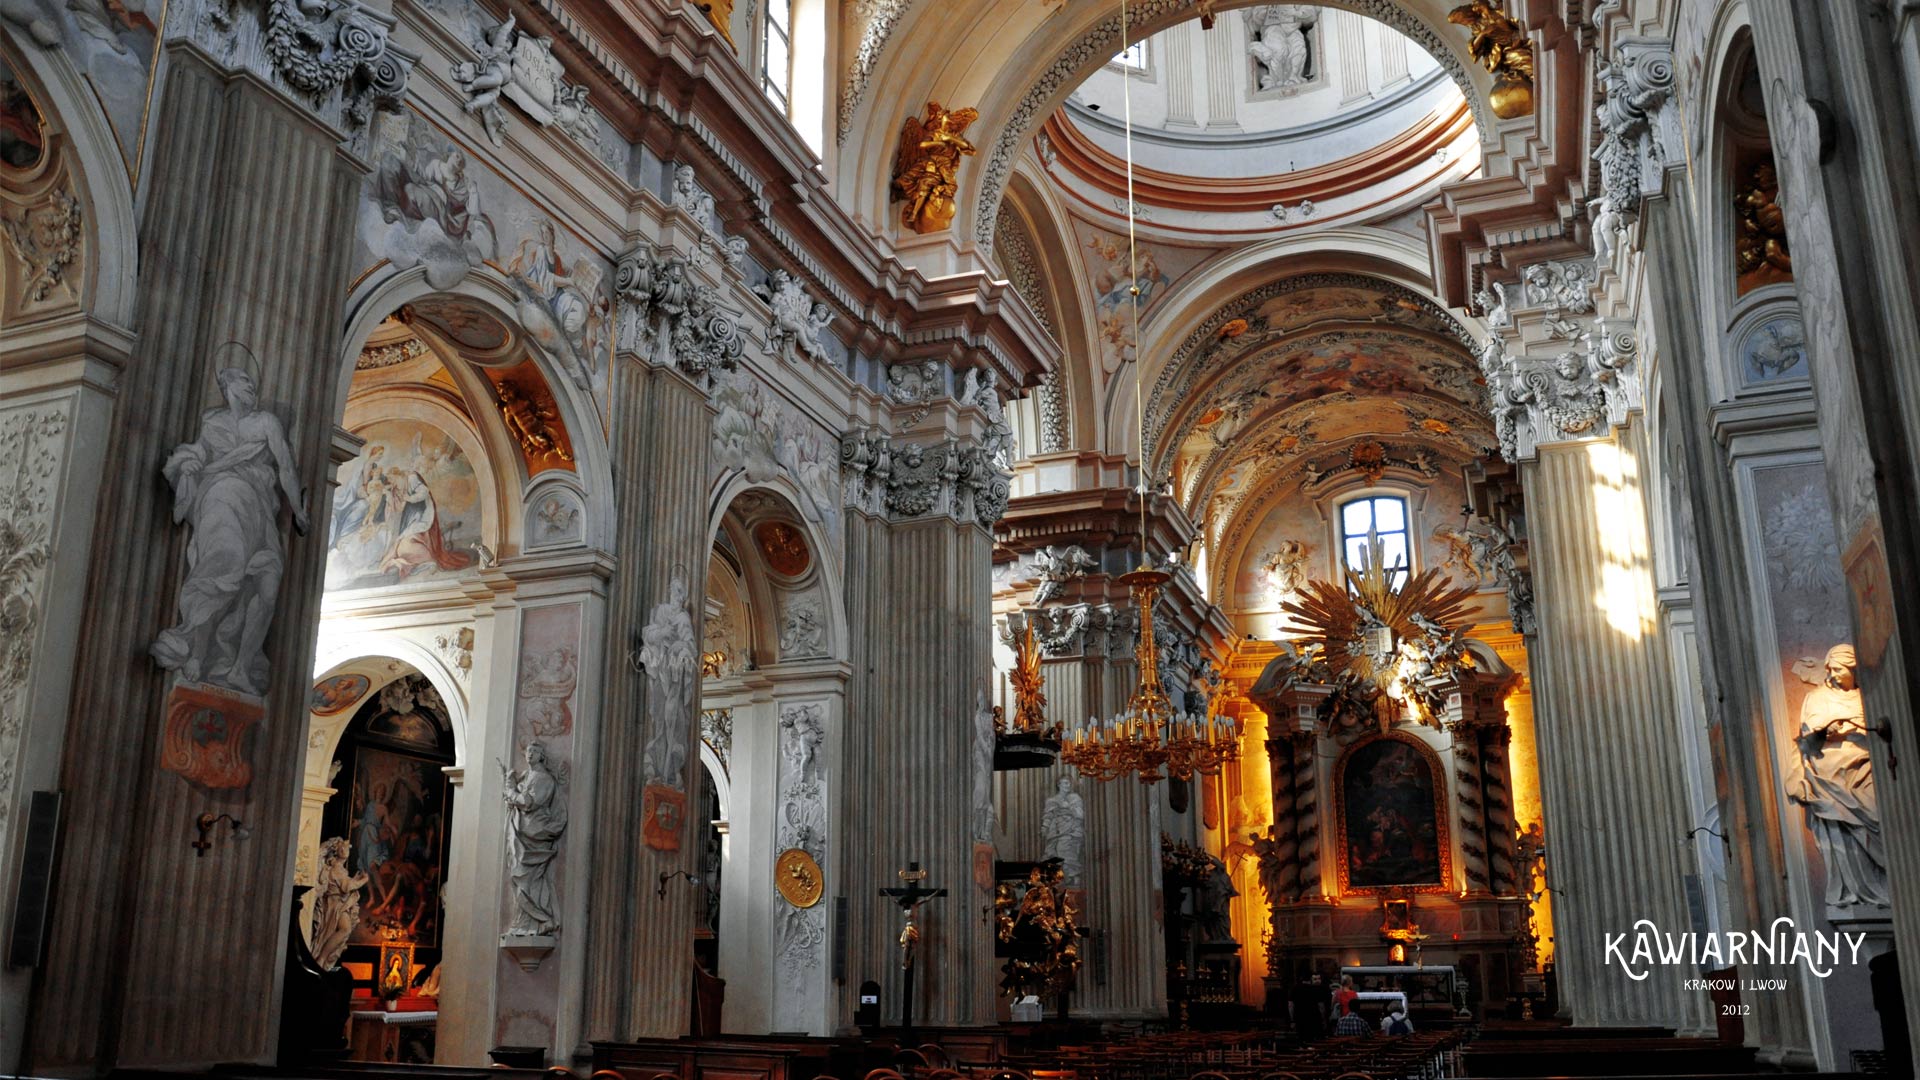 Kościół św. Anny w Krakowie. W samym centrum, chociaż jakby na uboczu…